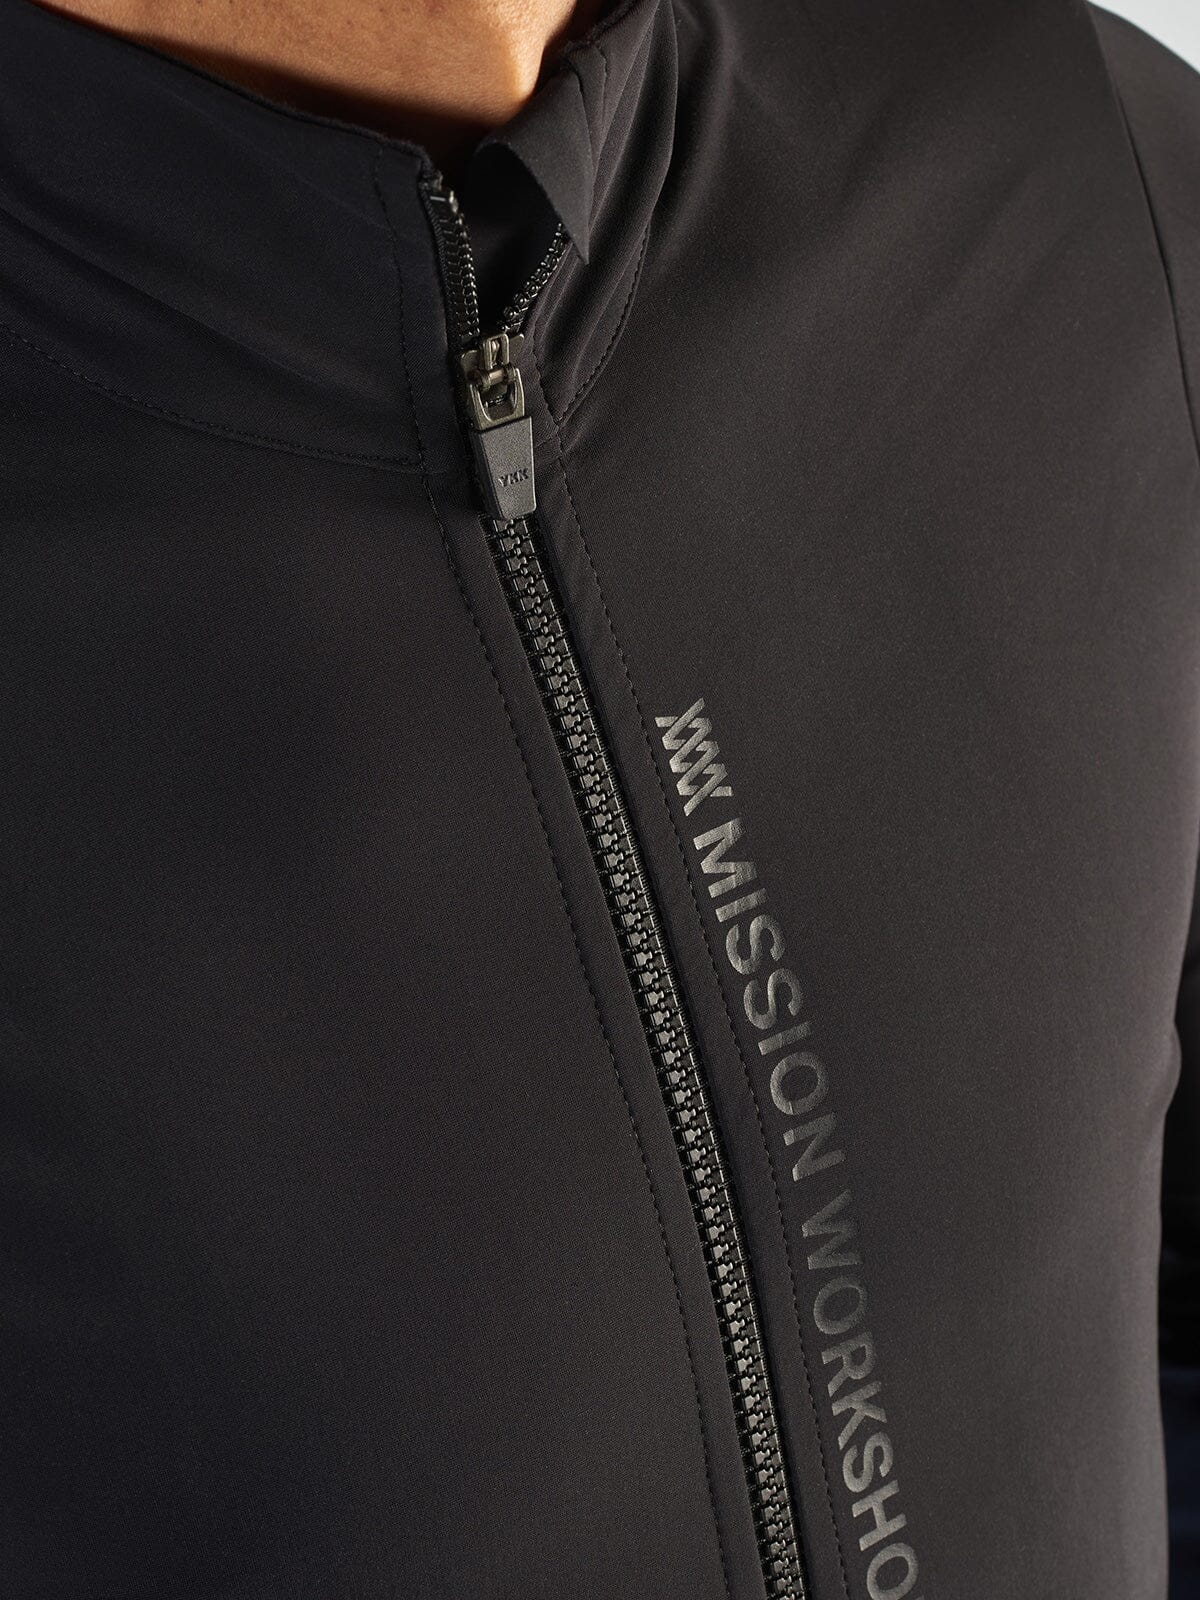 Range Jacket Men's von Mission Workshop - Wetterfeste Taschen & Technische Bekleidung - San Francisco & Los Angeles - Für die Ewigkeit gebaut - Garantiert